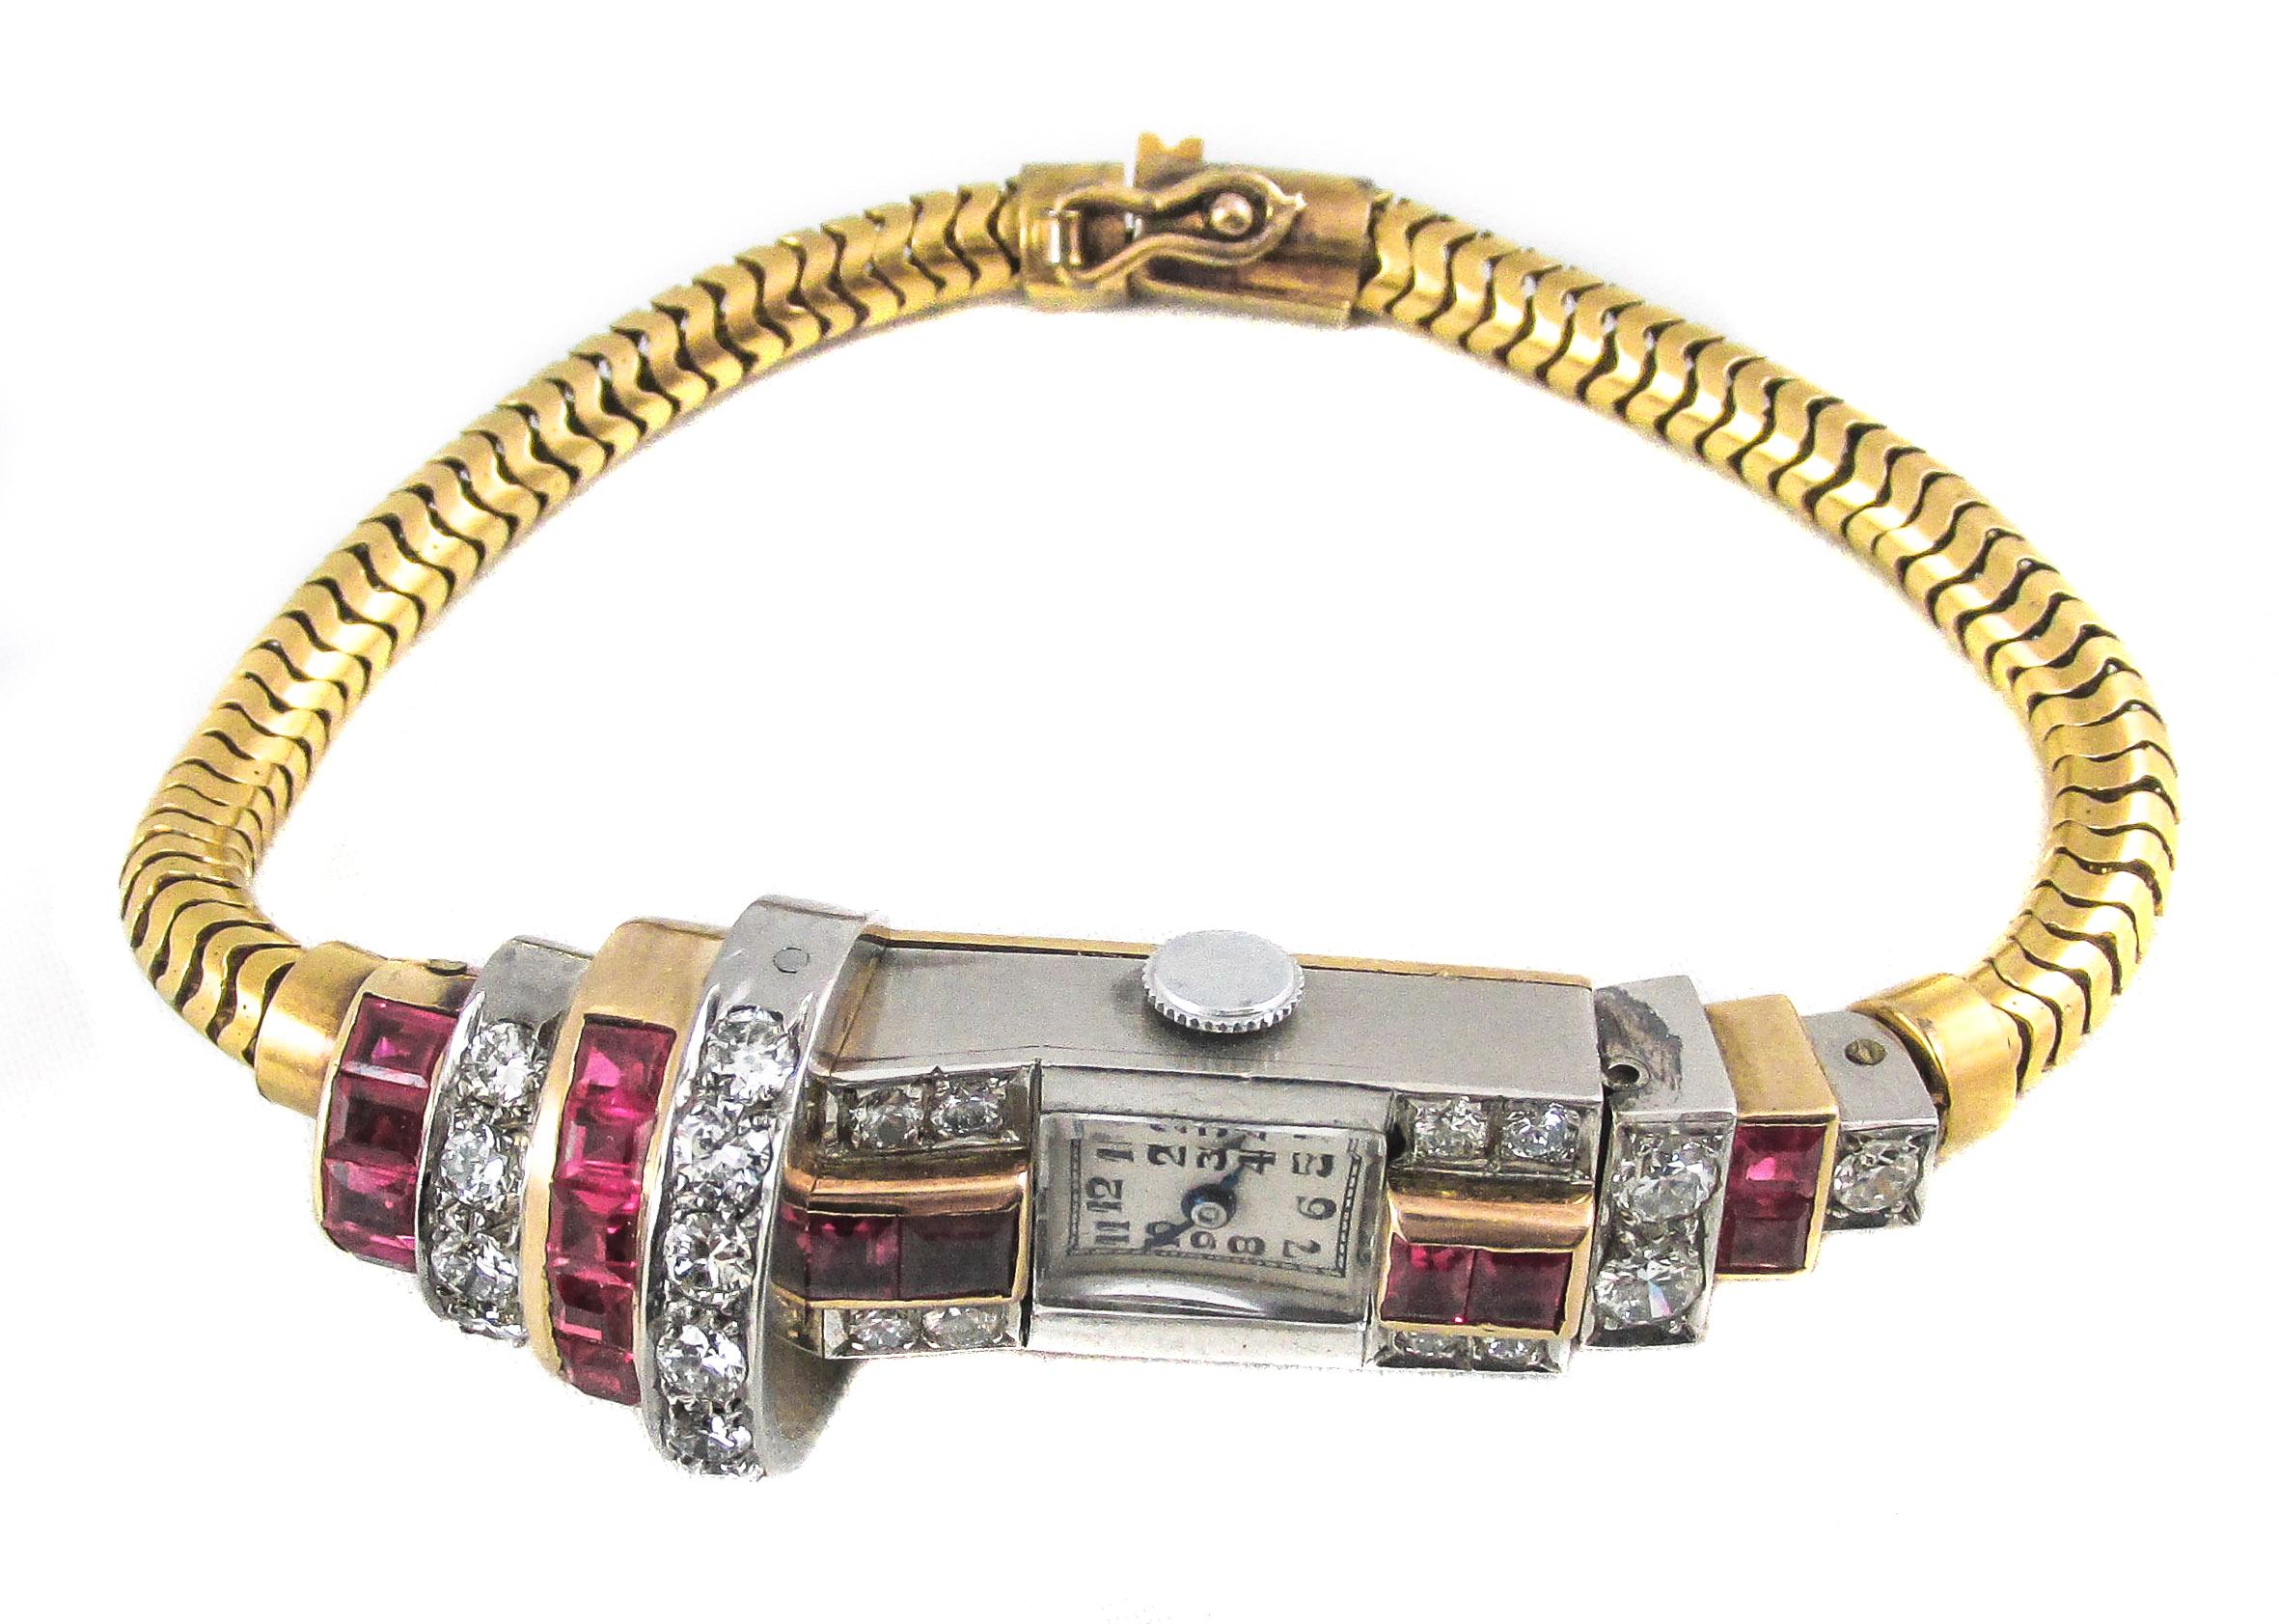 Diese einzigartige Damenarmbanduhr im Retro-Stil der 1940er Jahre besteht aus abwechselnd in Gelbgold gefassten Rubinen und in Platin gefassten runden Diamanten mit Brillantschliff, die in ihrer Größe abgestuft sind und flexibel mit dem Gehäuse und